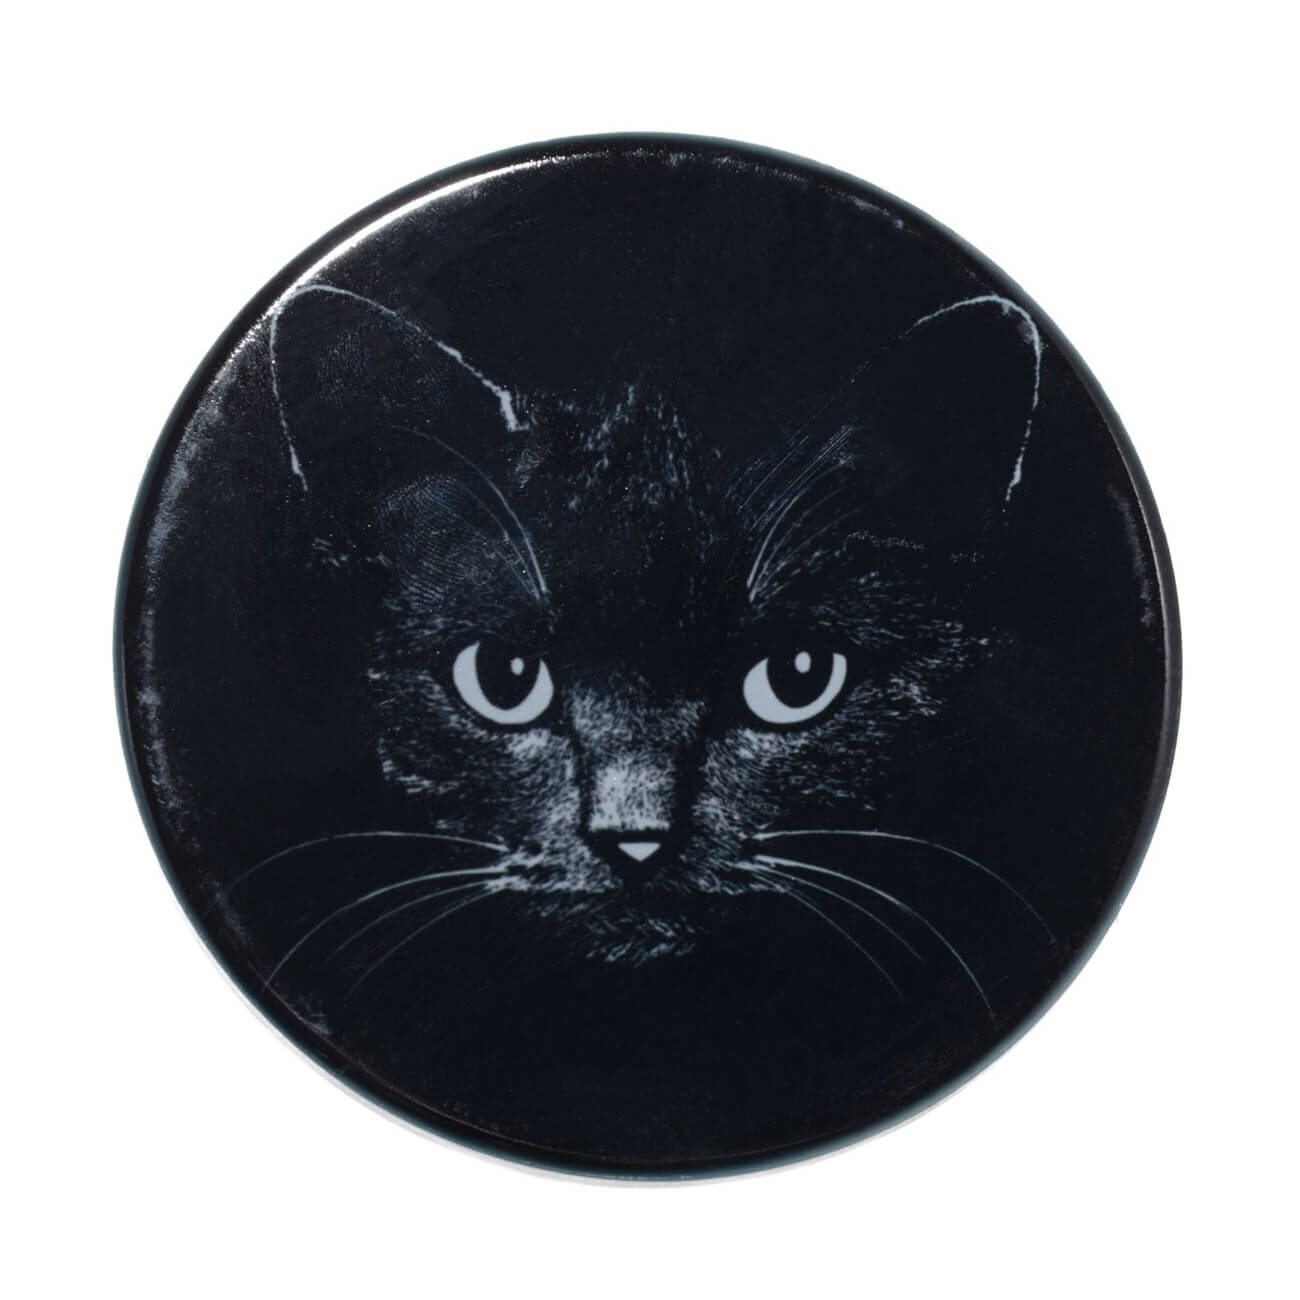 Подставка под кружку, 11x11 см, керамика/пробка, круглая, черная, Ночной кот, Cat night подставка под кружку 11x11 см керамика пробка круглая черная ночной кот cat night